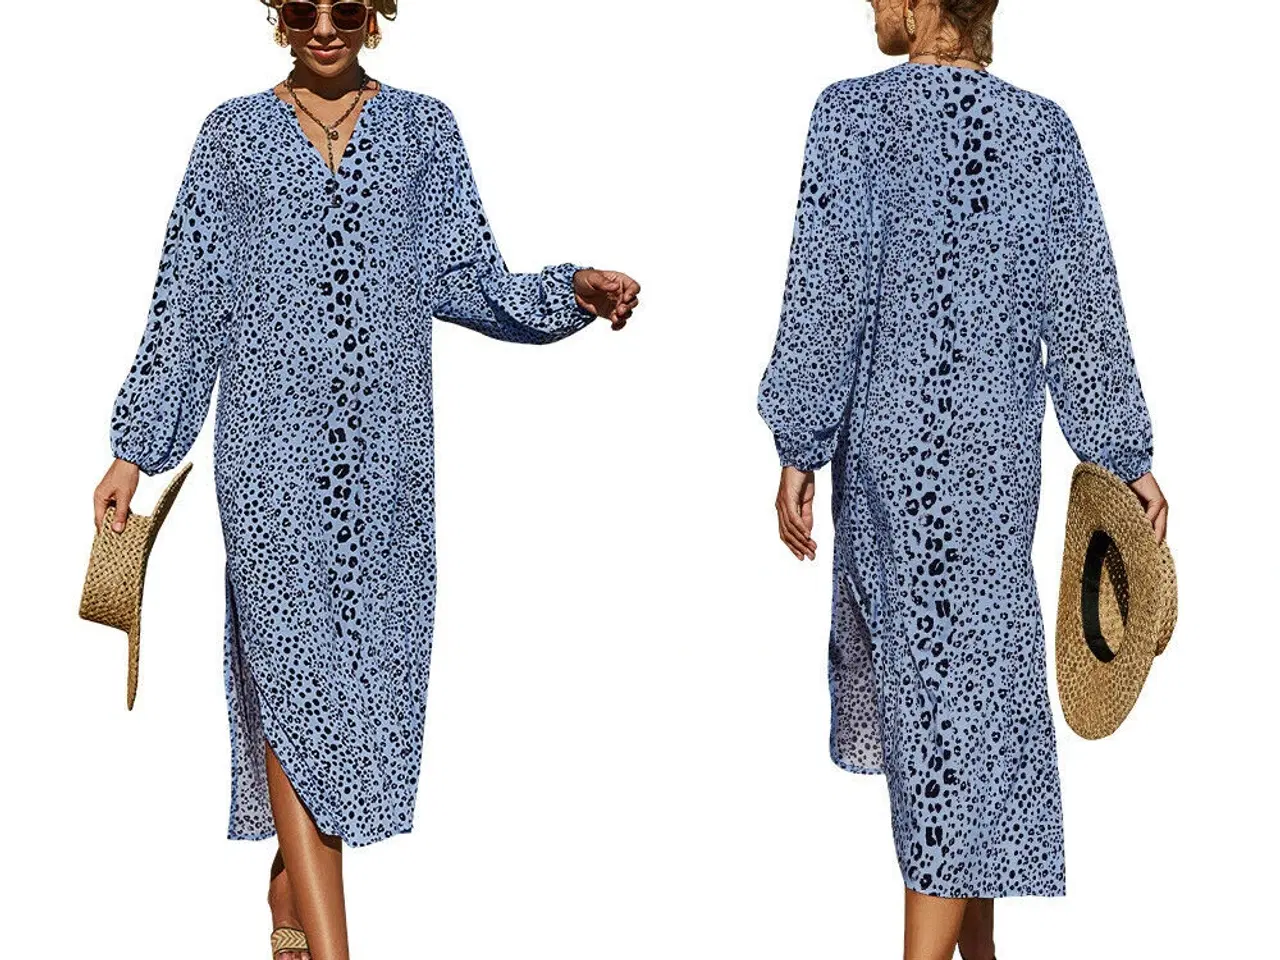 Billede 2 - kjole.ærmer/let og luftig Print: Blå leopard.M/L